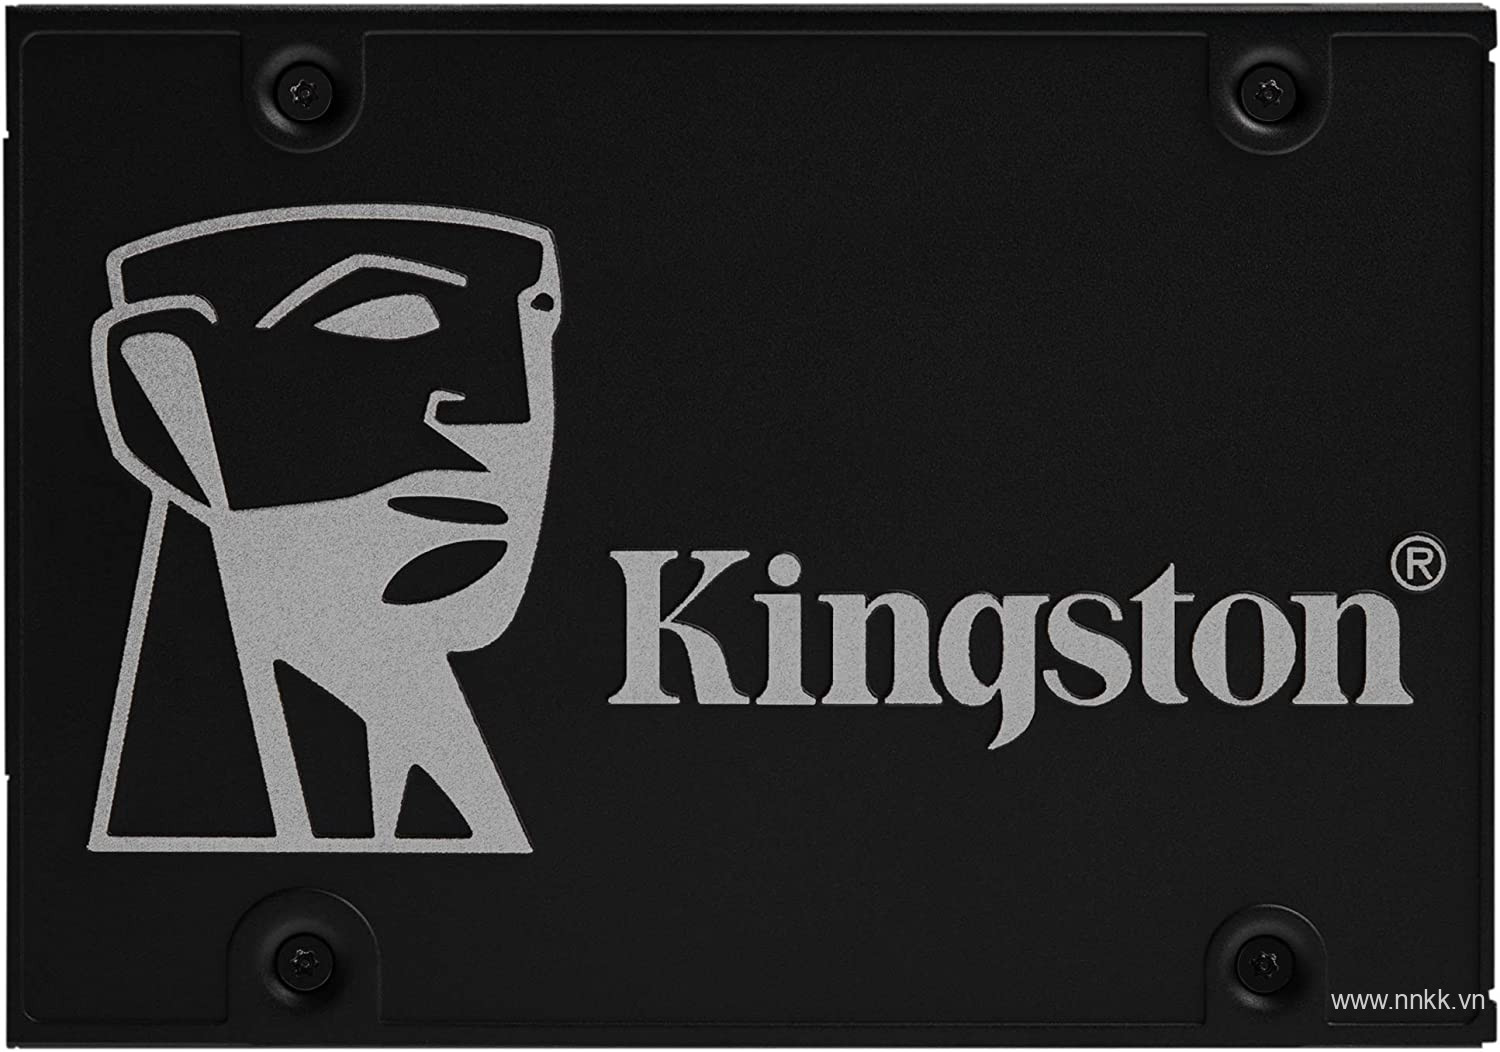 Ổ cứng ssd kingston KC600 - 512GB - 2.5 inch bảo hành 5 năm